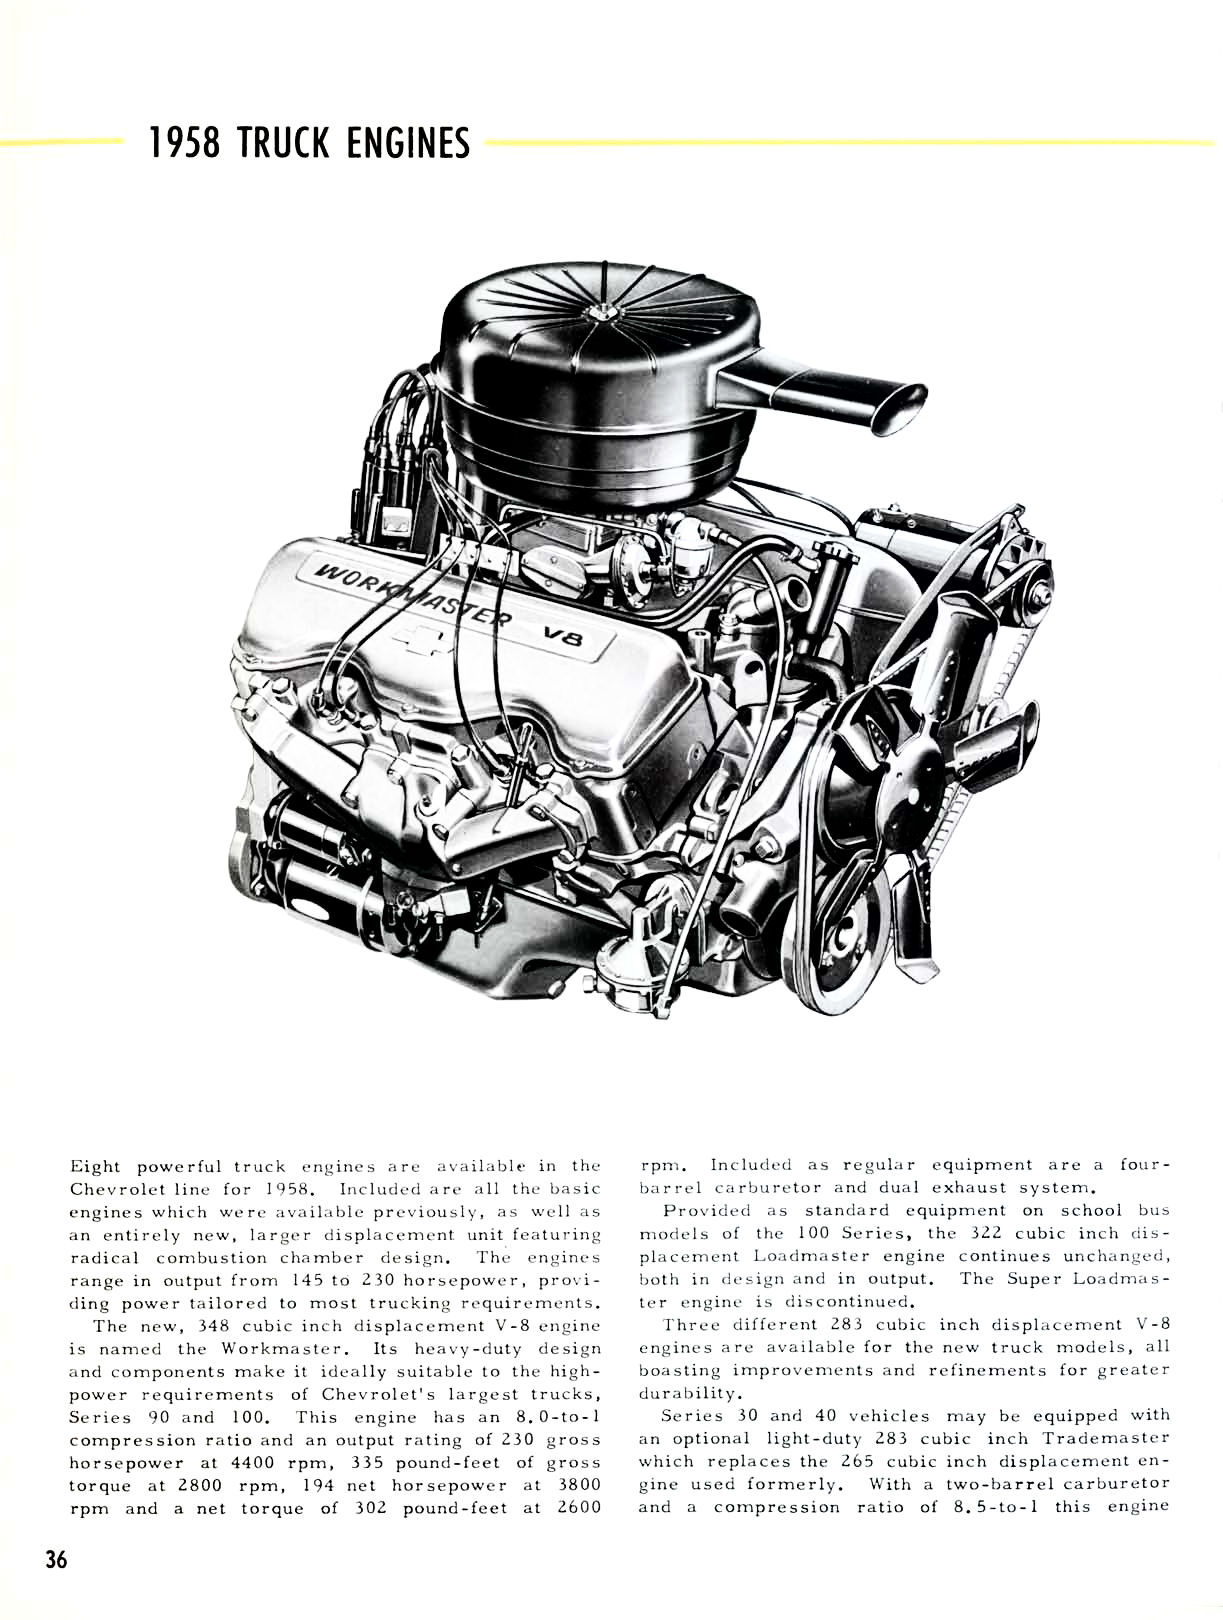 1958_Chevrolet_Truck_Engineering_Features-36